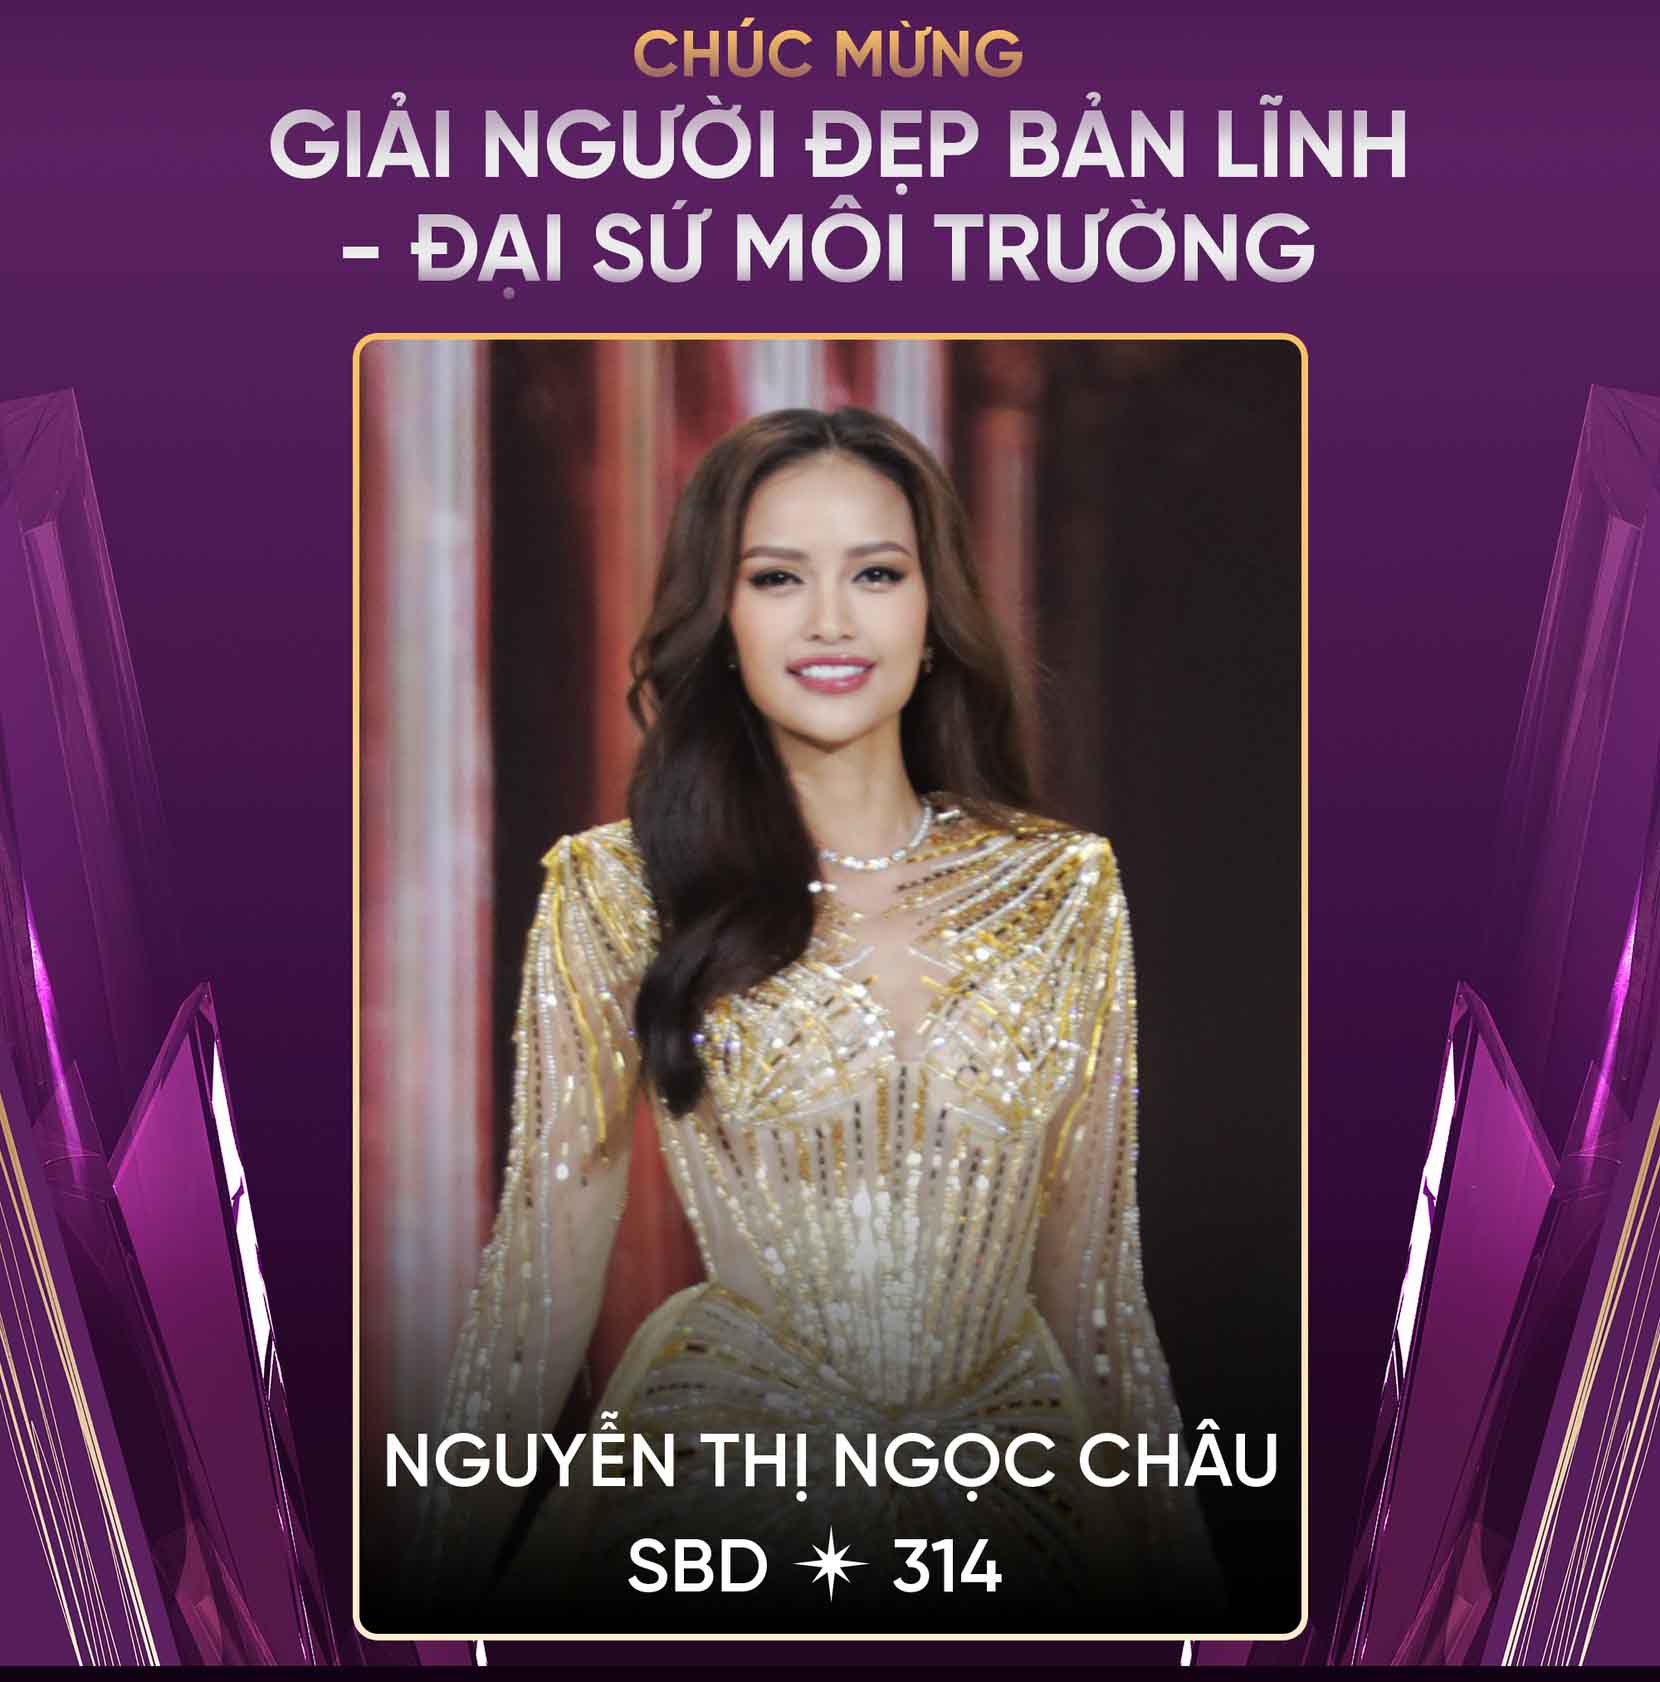 Hậu ồn ào gian lận học vấn, Hoa hậu Ngọc Châu tiếp tục bị réo tên vì 'vô trách nhiệm' với danh hiệu được trao từ một năm trước - Ảnh 2